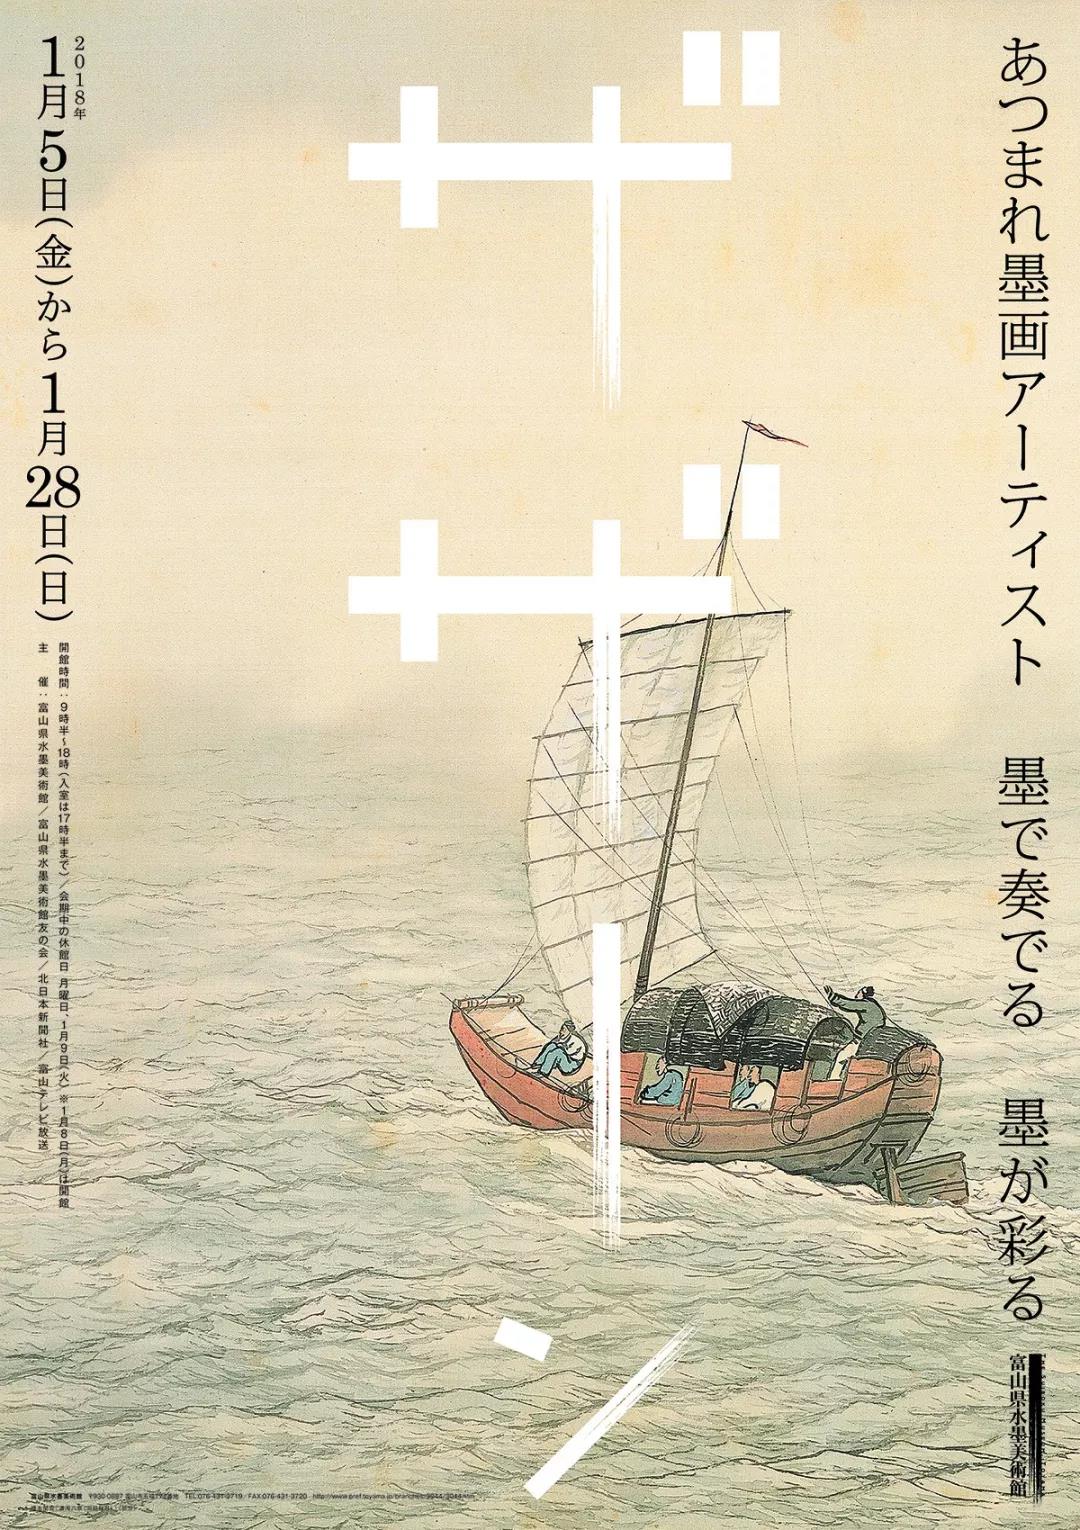 艺术展览主题的日本海报设计